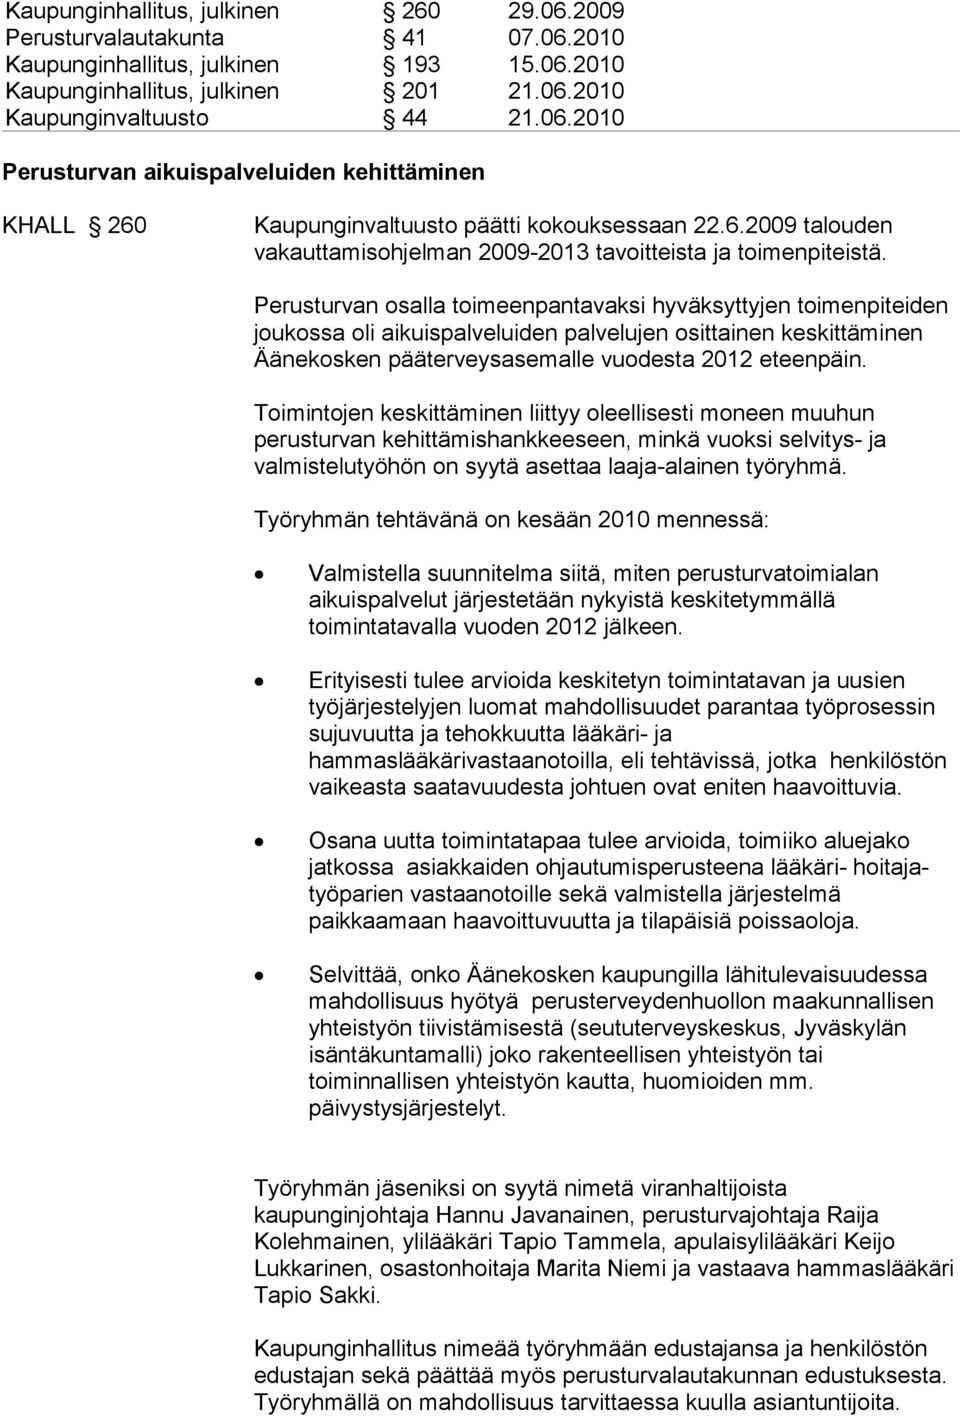 Perusturvan osalla toimeenpantavaksi hyväksyttyjen toimenpiteiden joukossa oli aikuispalveluiden palvelujen osittainen keskittäminen Äänekosken pääterveysasemalle vuodesta 2012 eteenpäin.